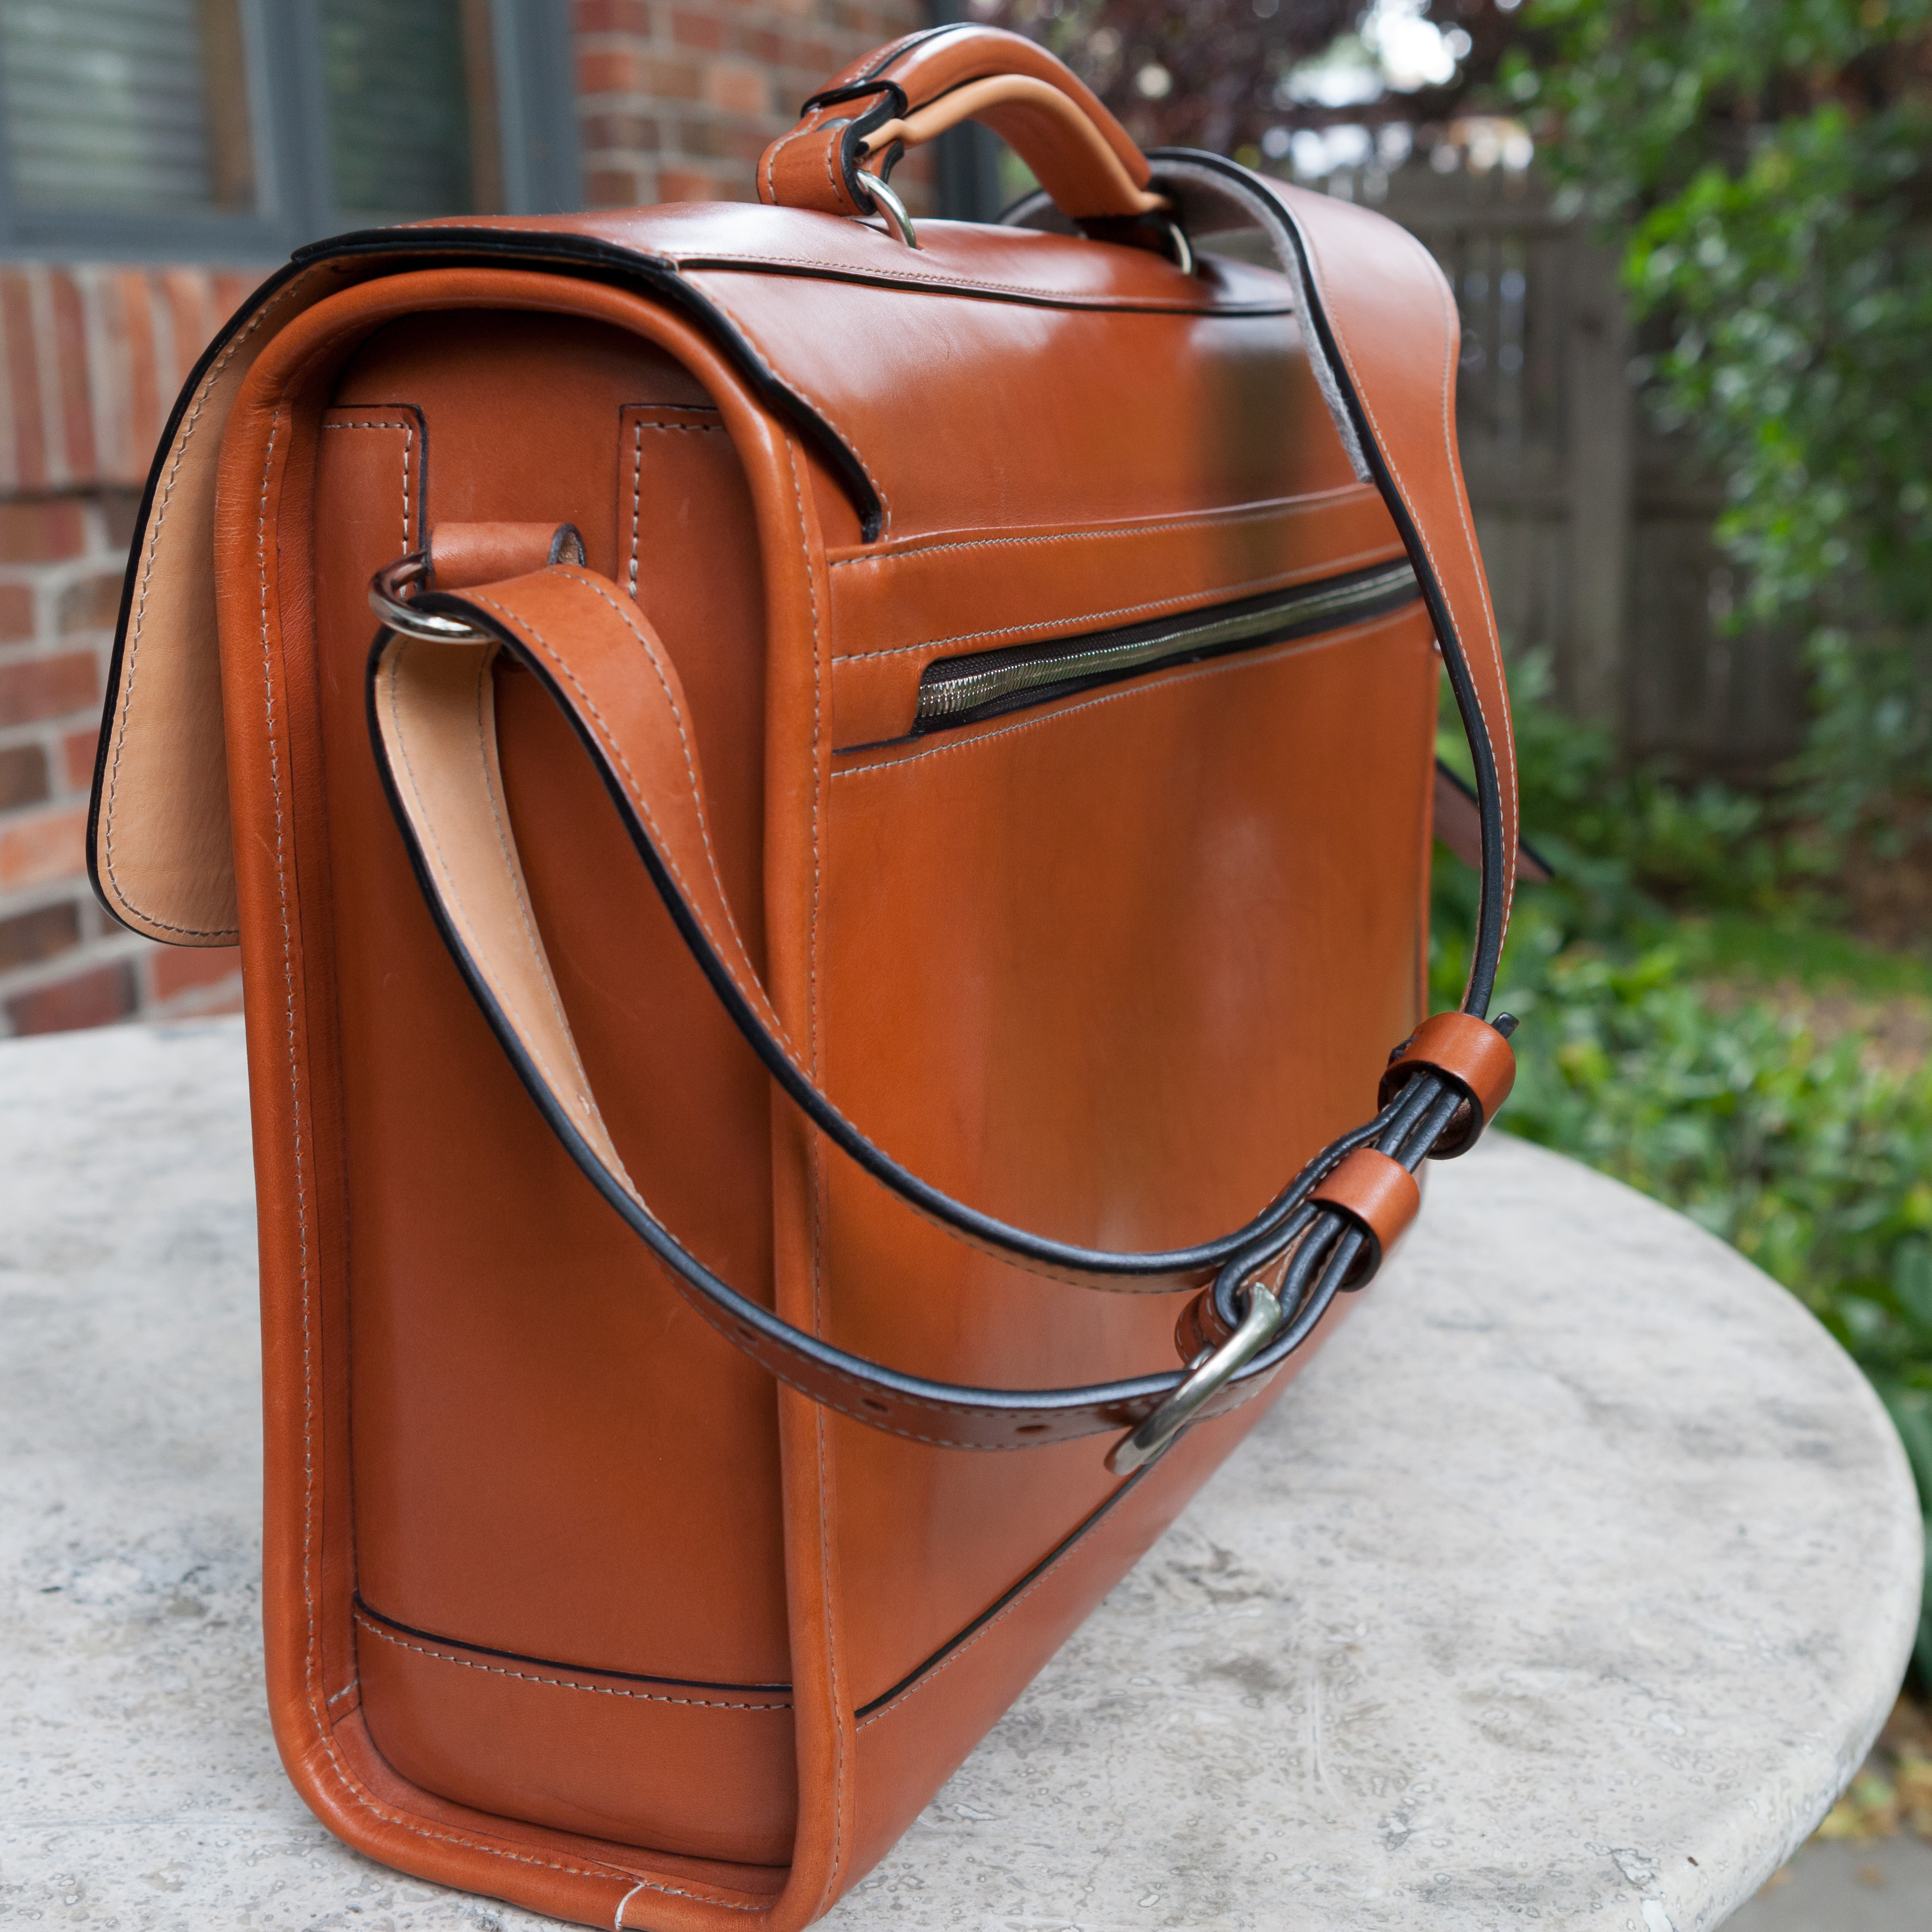 New Glaser Designs Briefcase | Styleforum